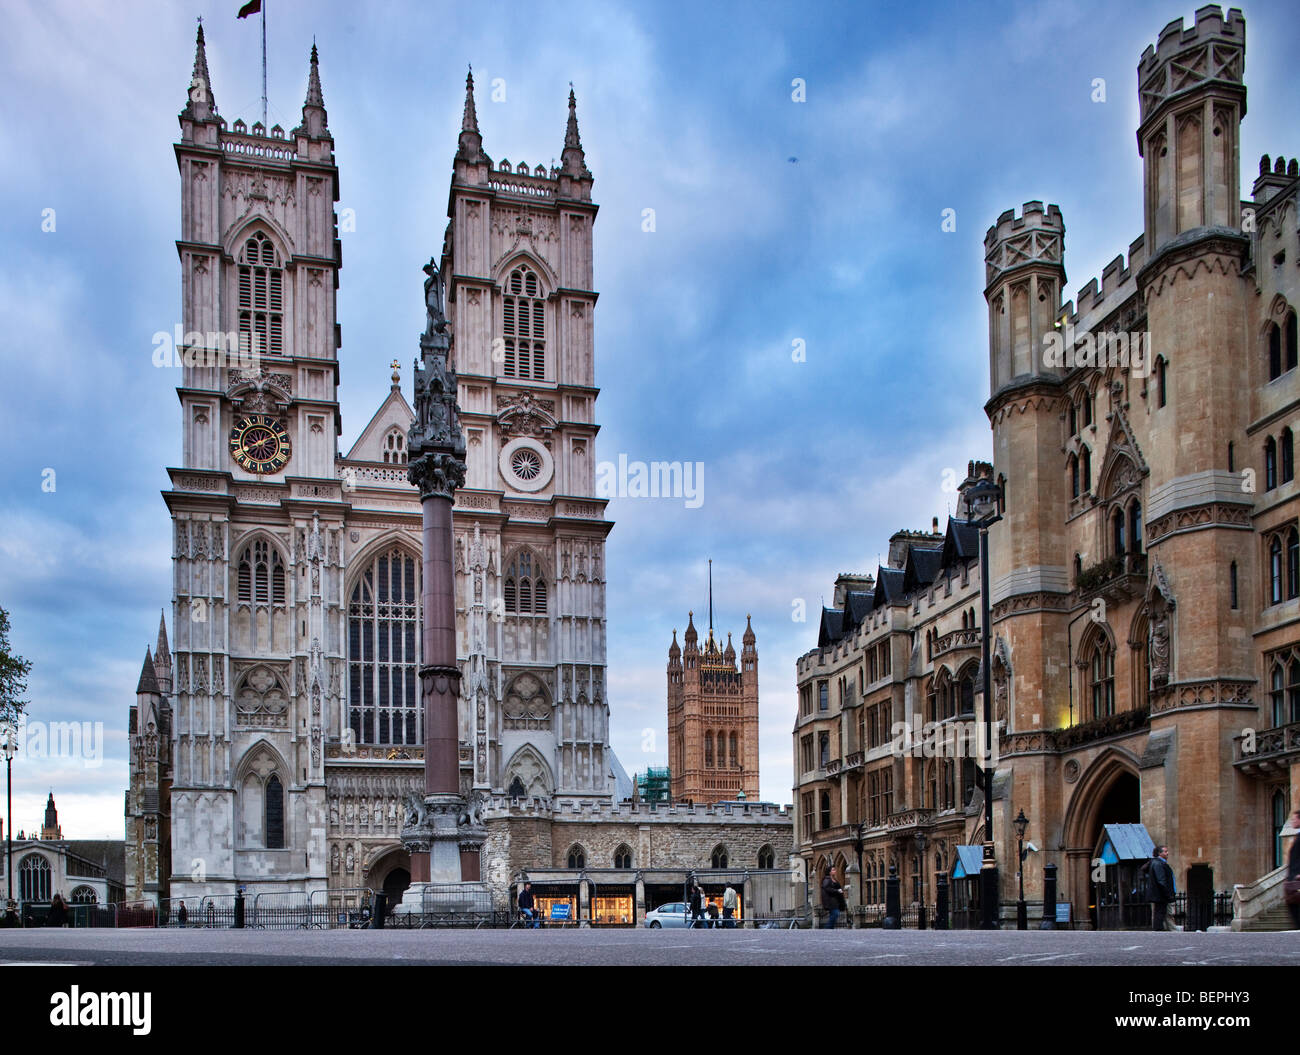 Westminster Abbey (links) und breiten Heiligtum bauen (rechts), Westminster, London, England, Vereinigtes Königreich Stockfoto